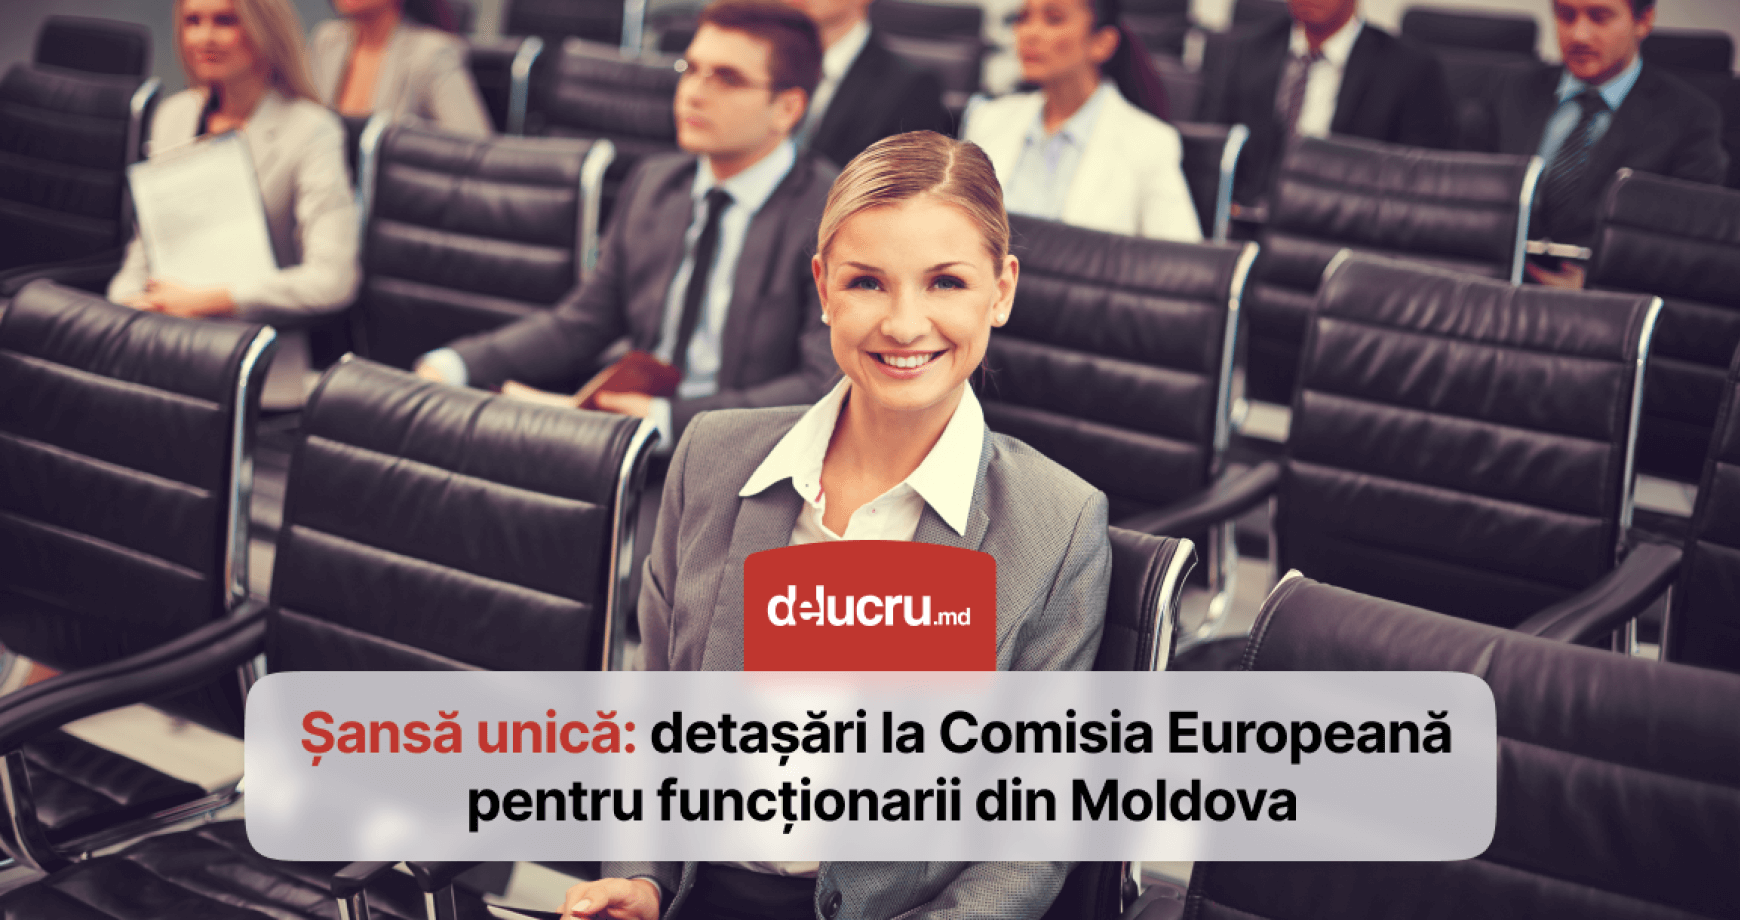 Funcționarii moldoveni ar putea fi detașați la Comisia Europeană pentru experiență